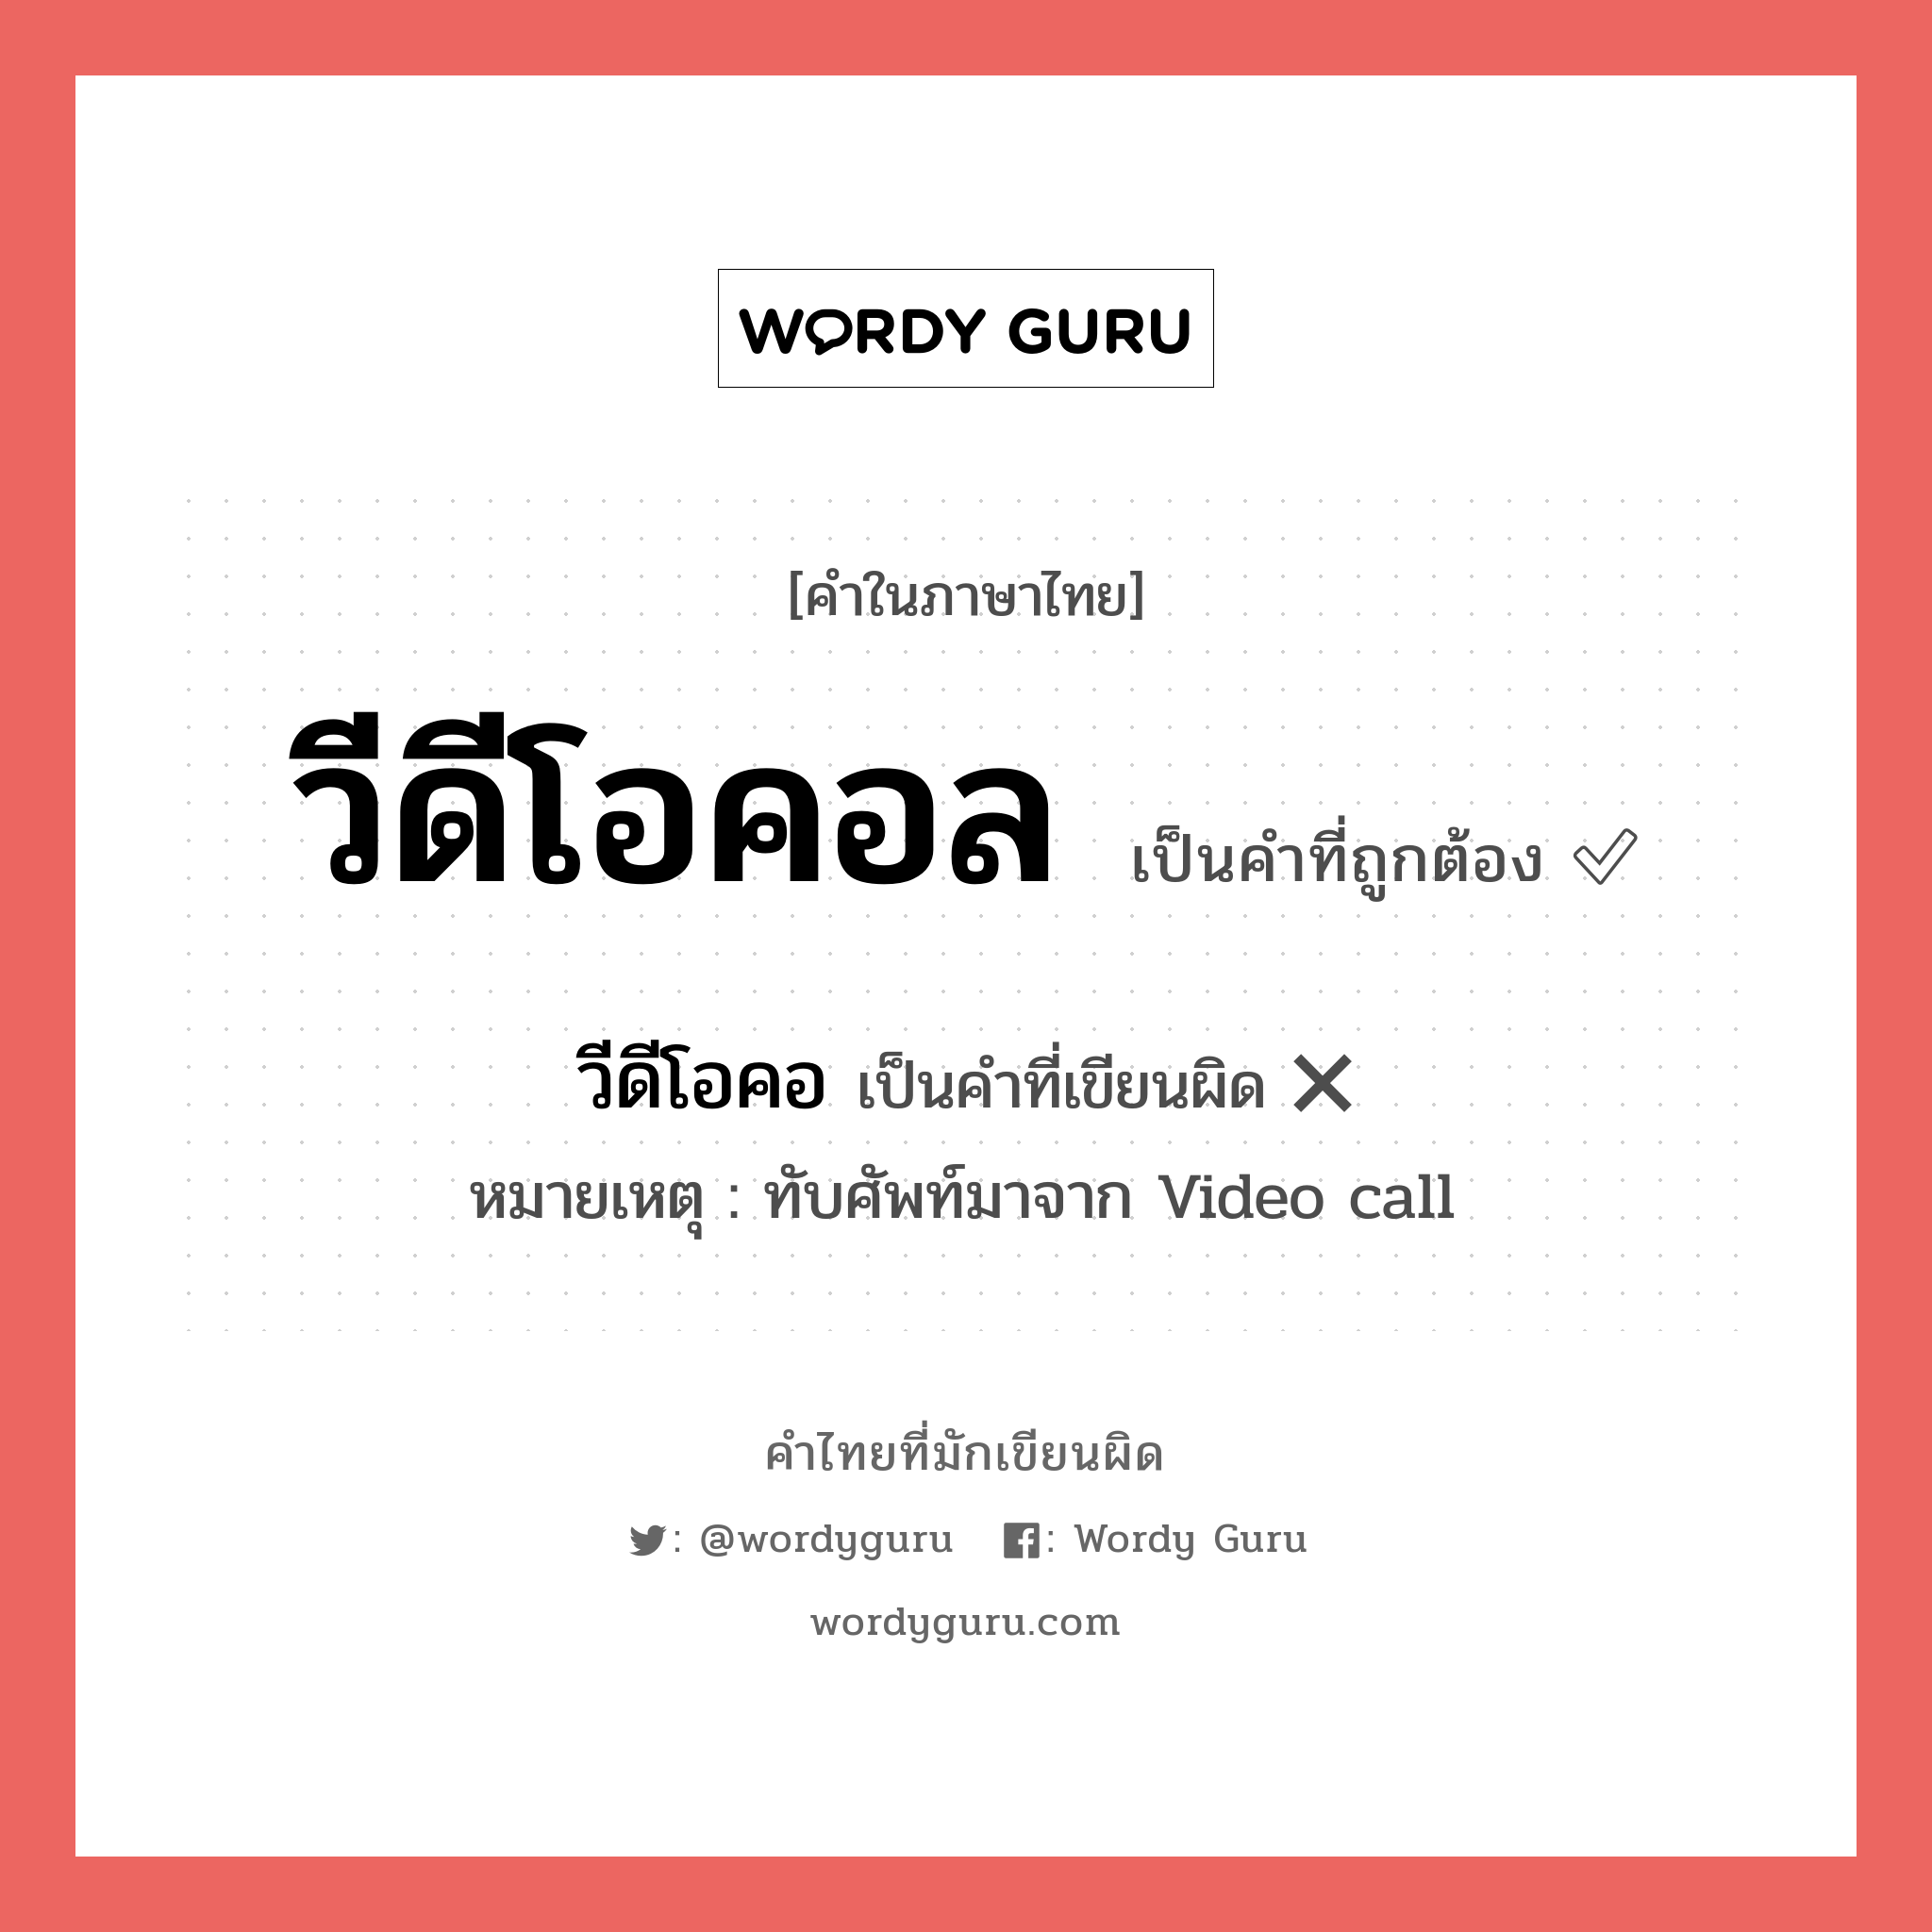 วีดีโอคอ หรือ วีดีโอคอล คำไหนเขียนถูก?, คำในภาษาไทยที่มักเขียนผิด วีดีโอคอ คำที่ผิด ❌ วีดีโอคอล หมายเหตุ ทับศัพท์มาจาก Video call หมวด การติดต่อสื่อสาร หมวด การติดต่อสื่อสาร